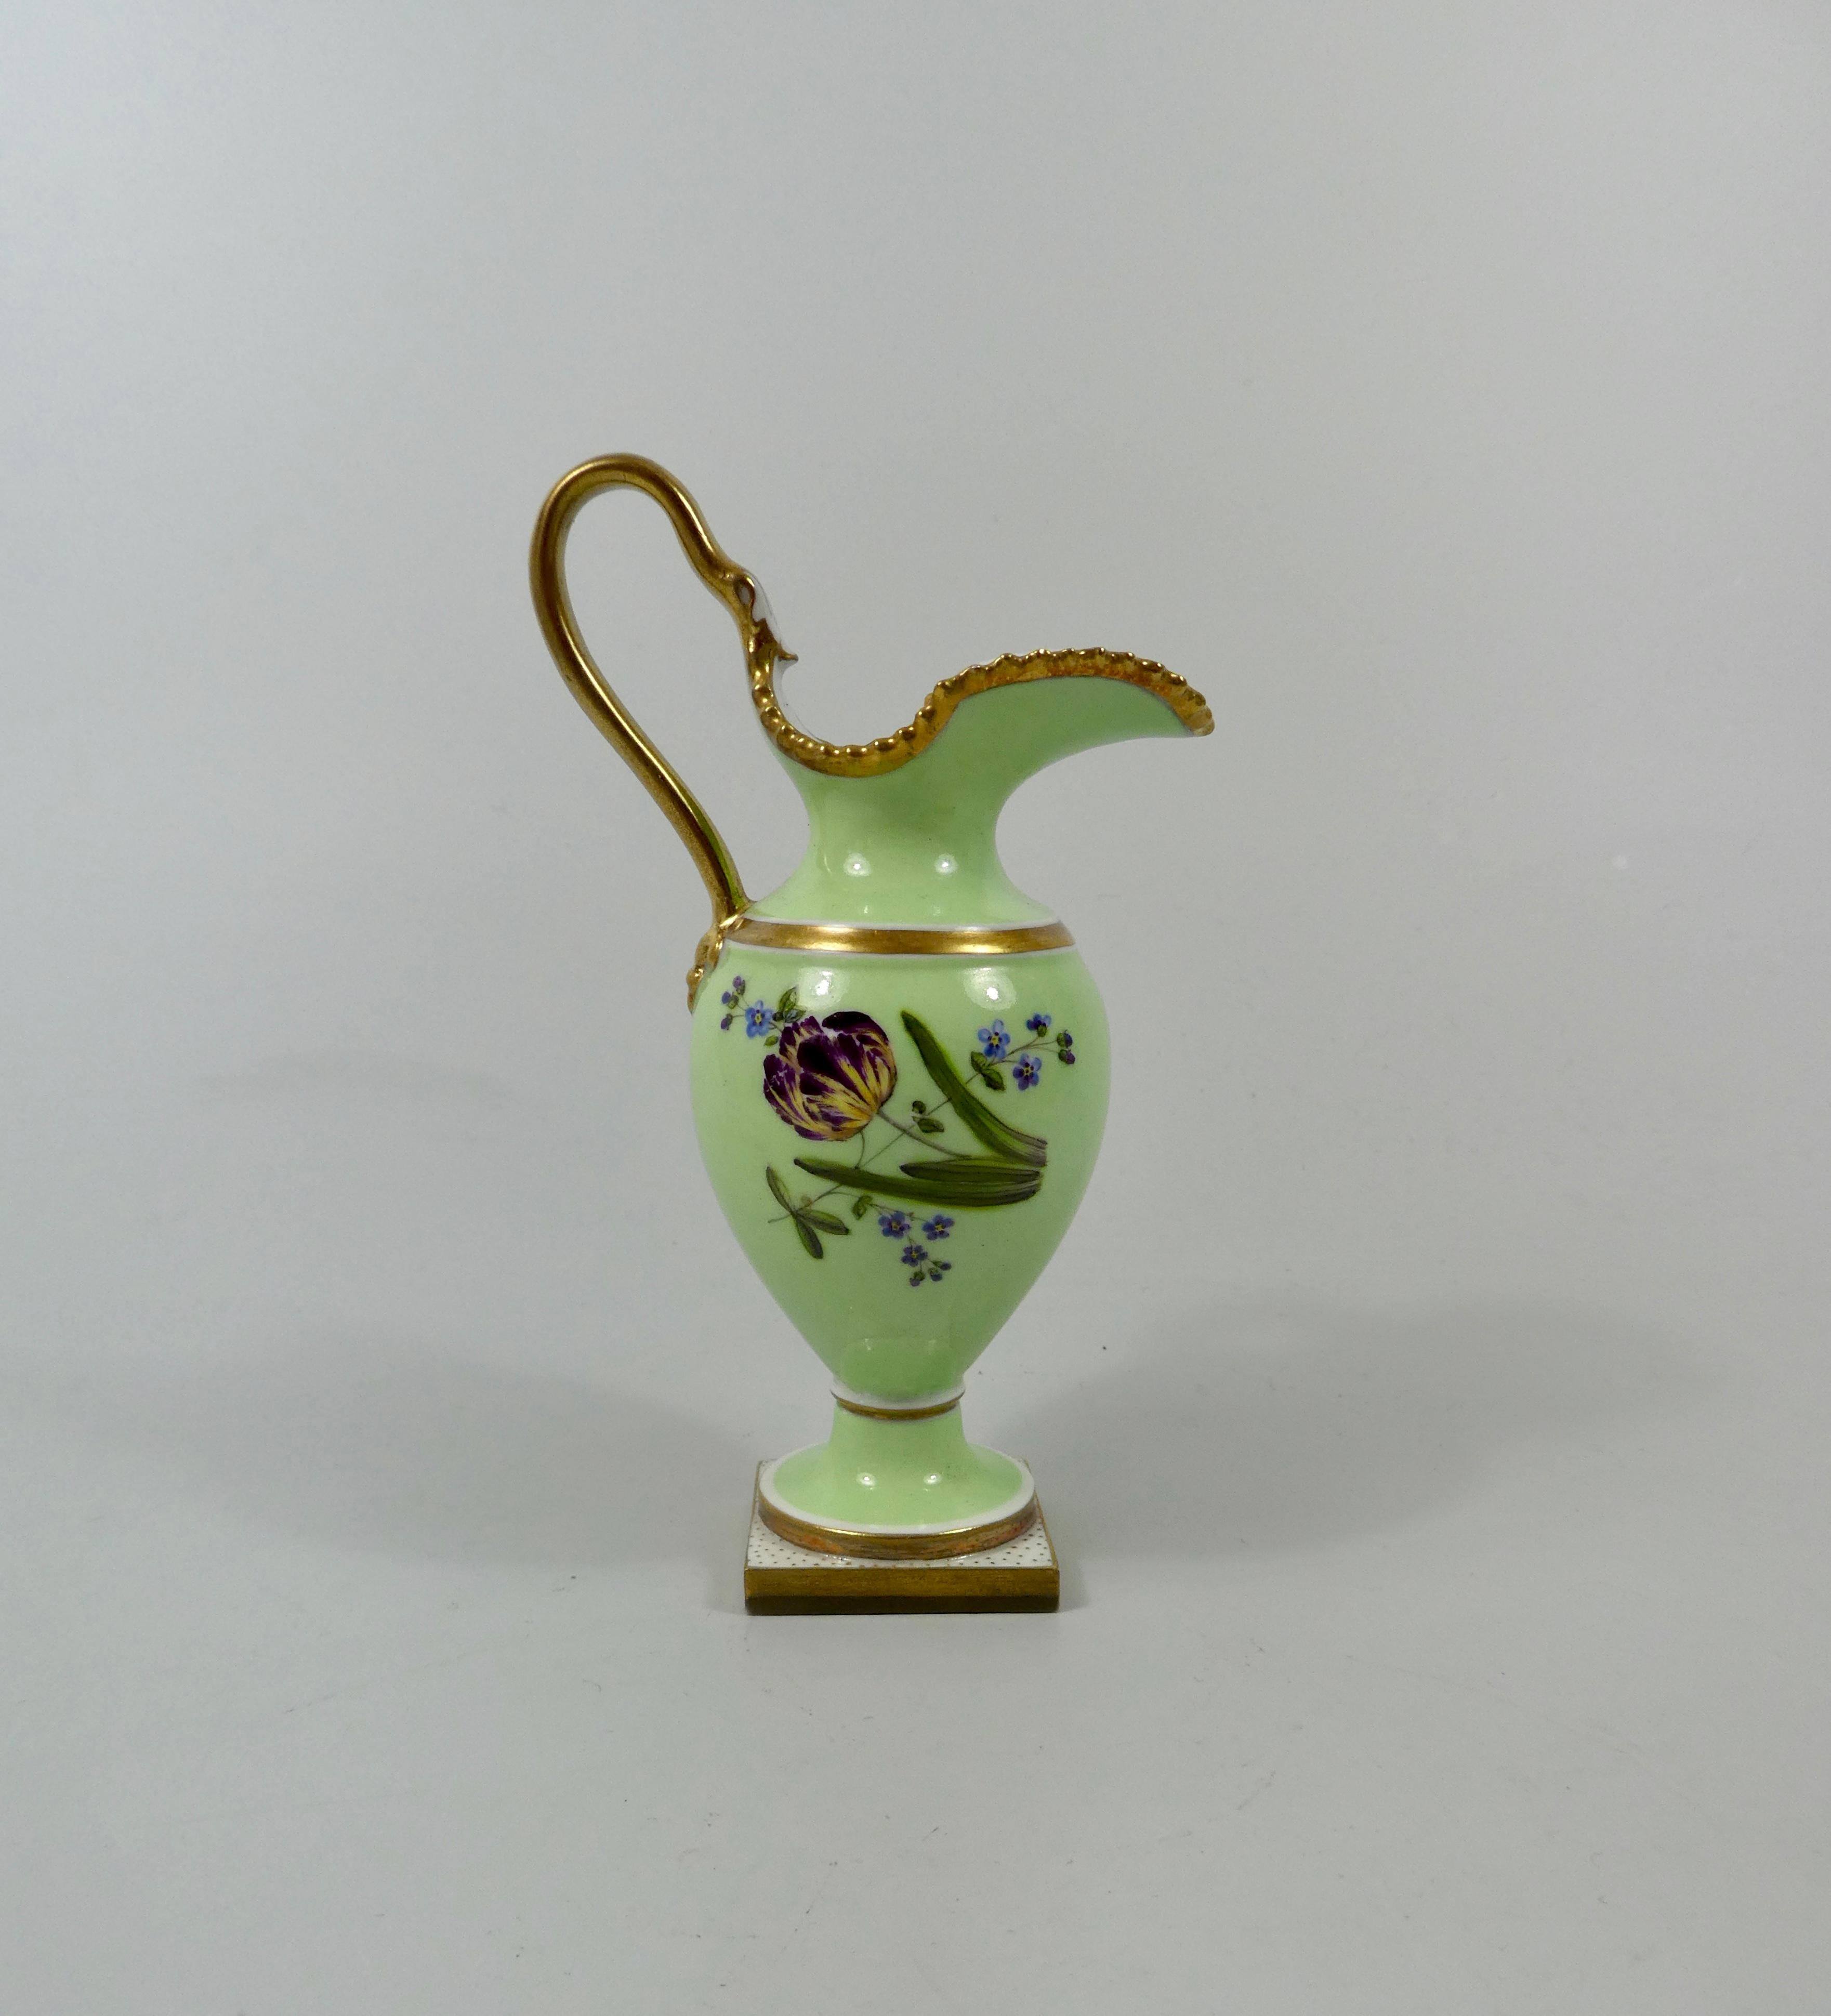 Regency FBB Worcester Porcelain Miniature Ewer, circa 1810